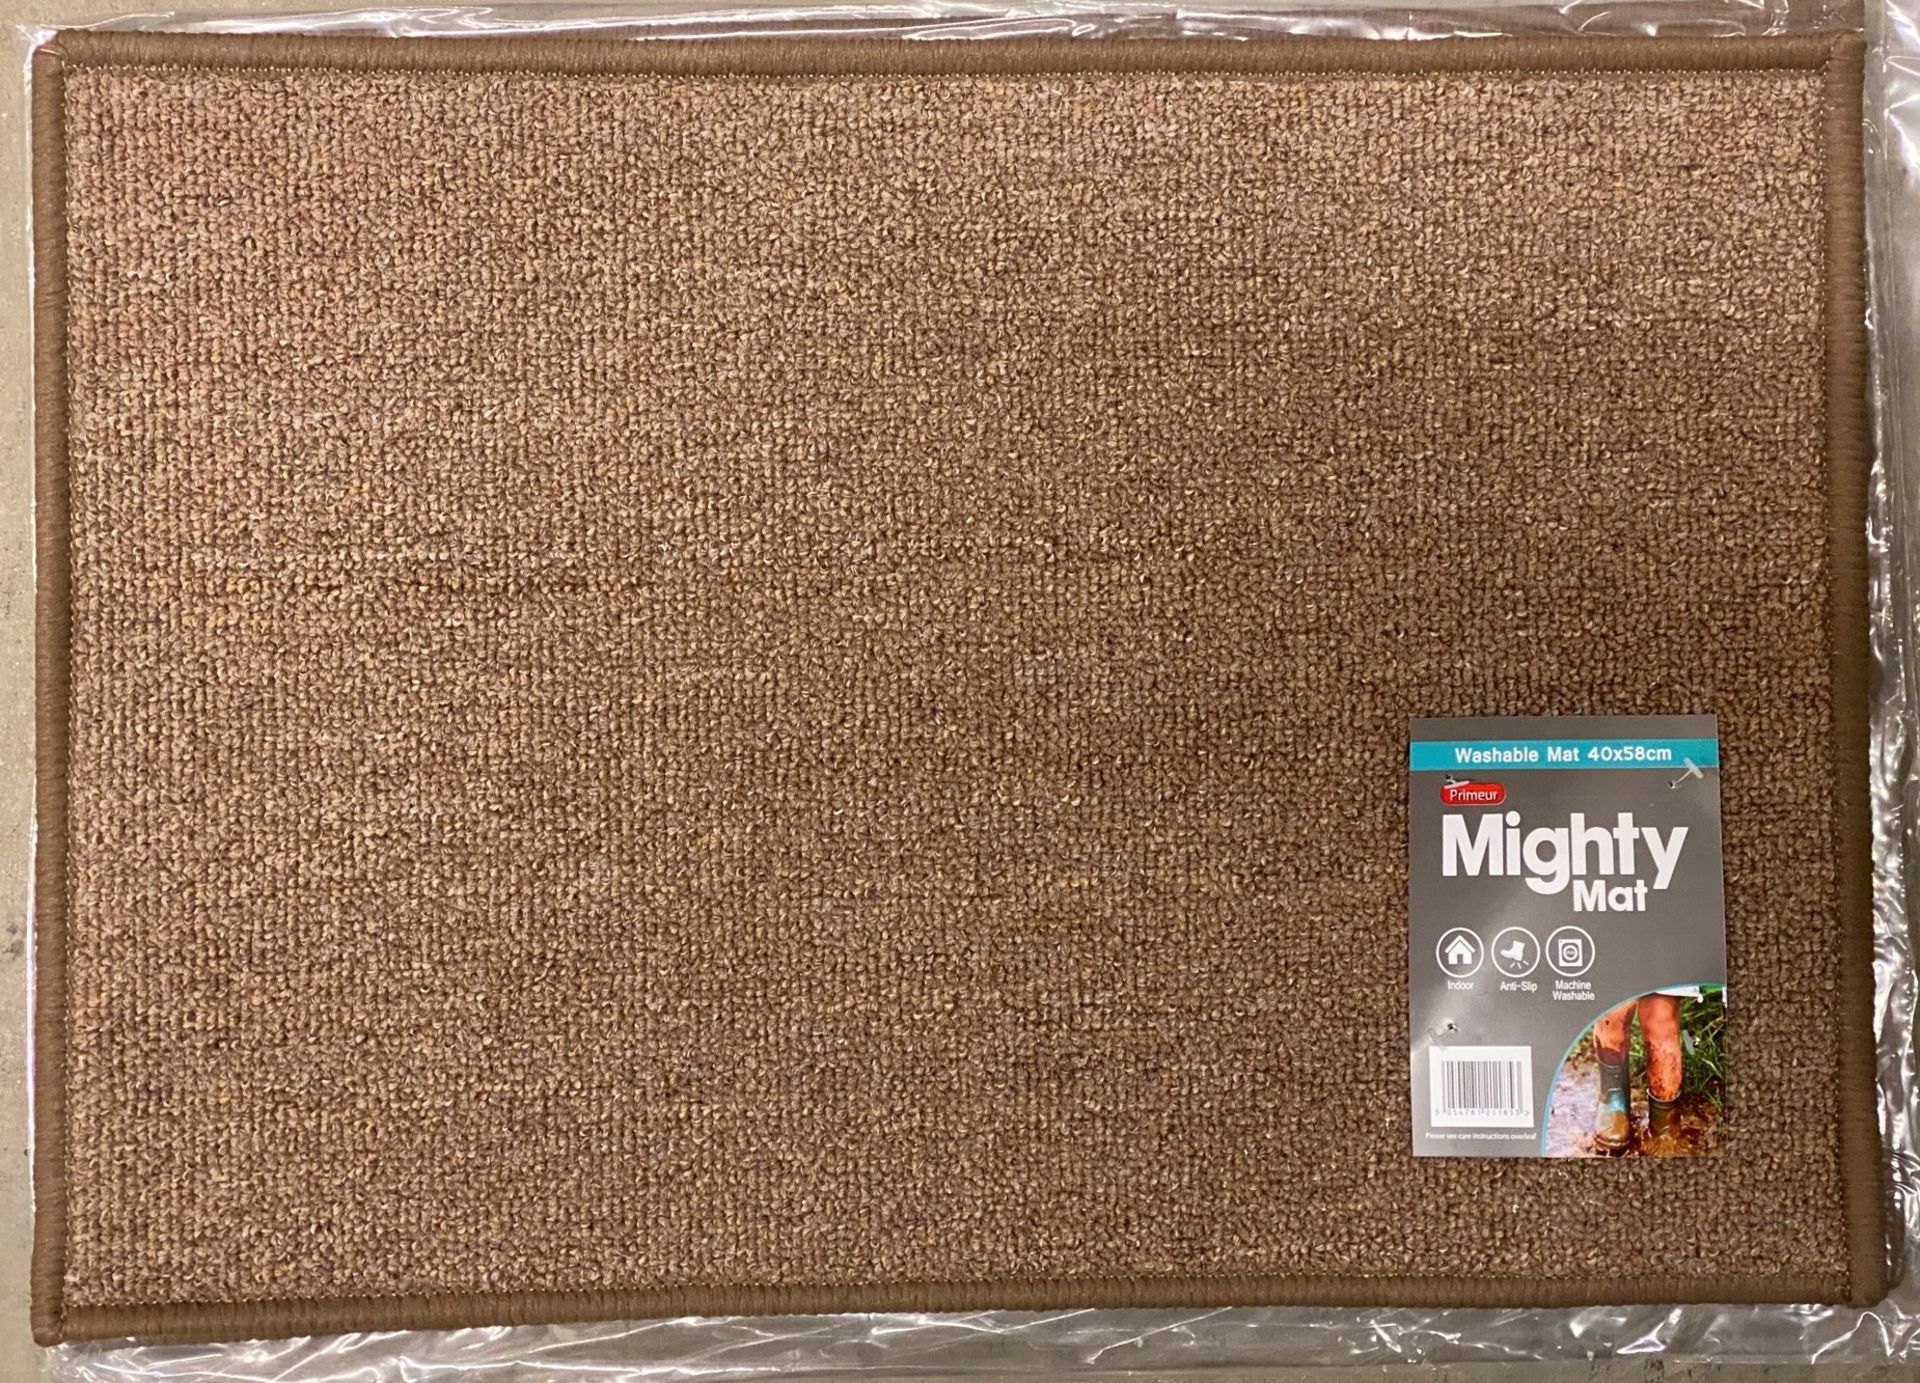 18 x Primeur Mighty Mats Beige Washable Doormats - 40cm x 58cm (6 x packs of 3)